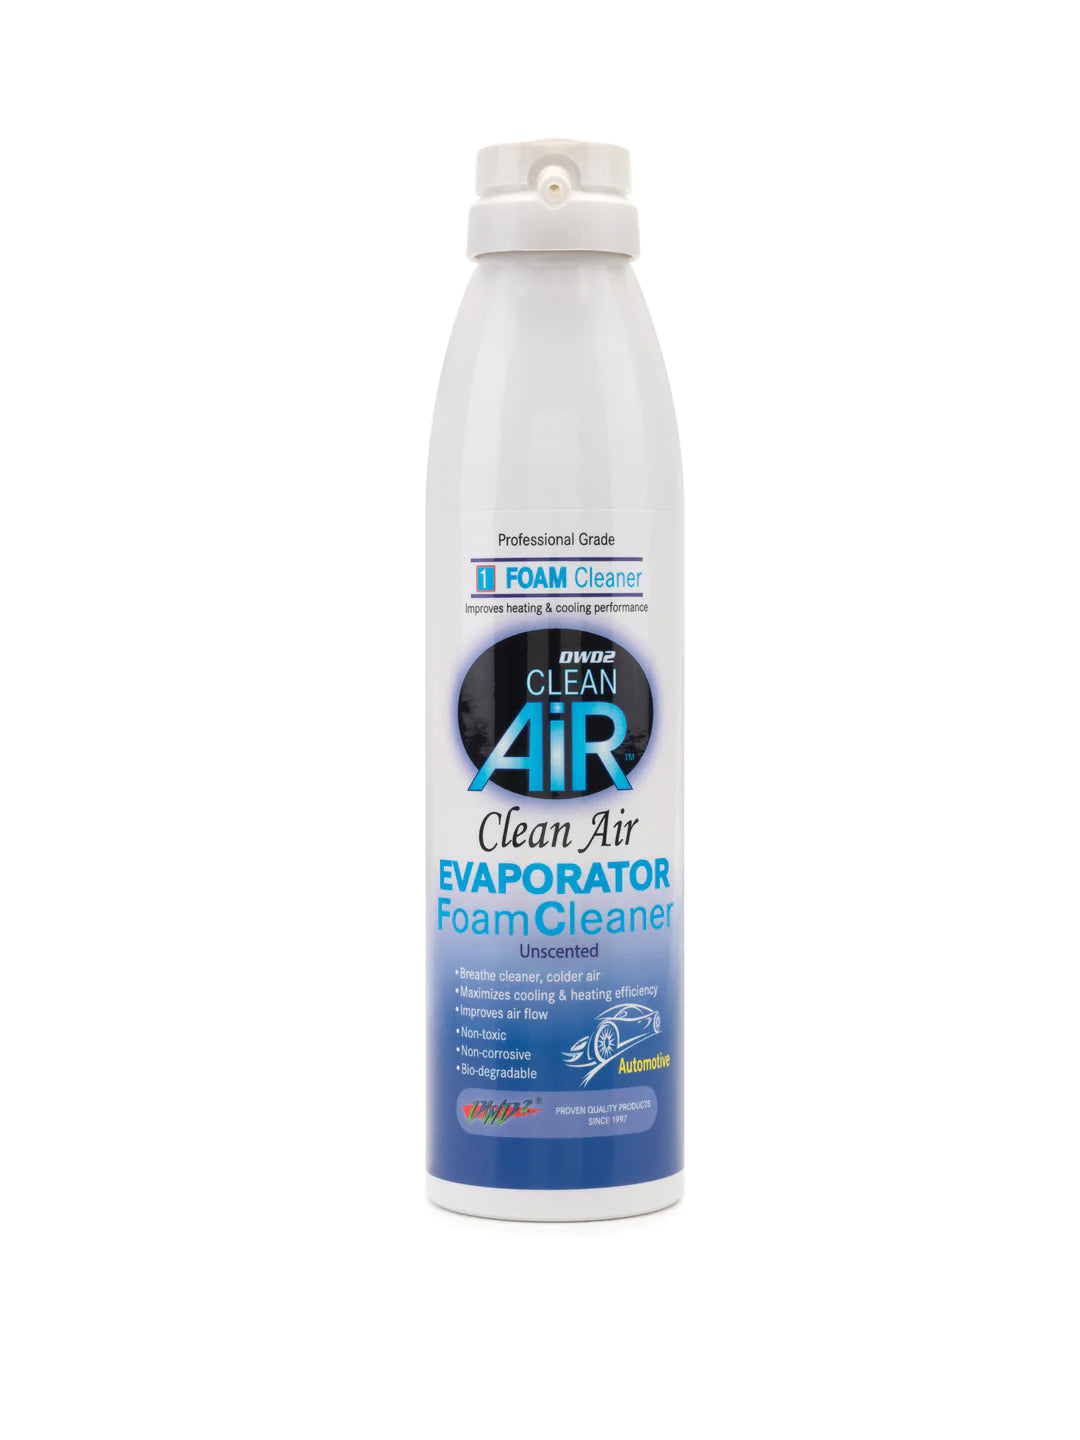 Clea Air Evaporator Foam Cleaner/ Espuma Limpiadora de Evaporador